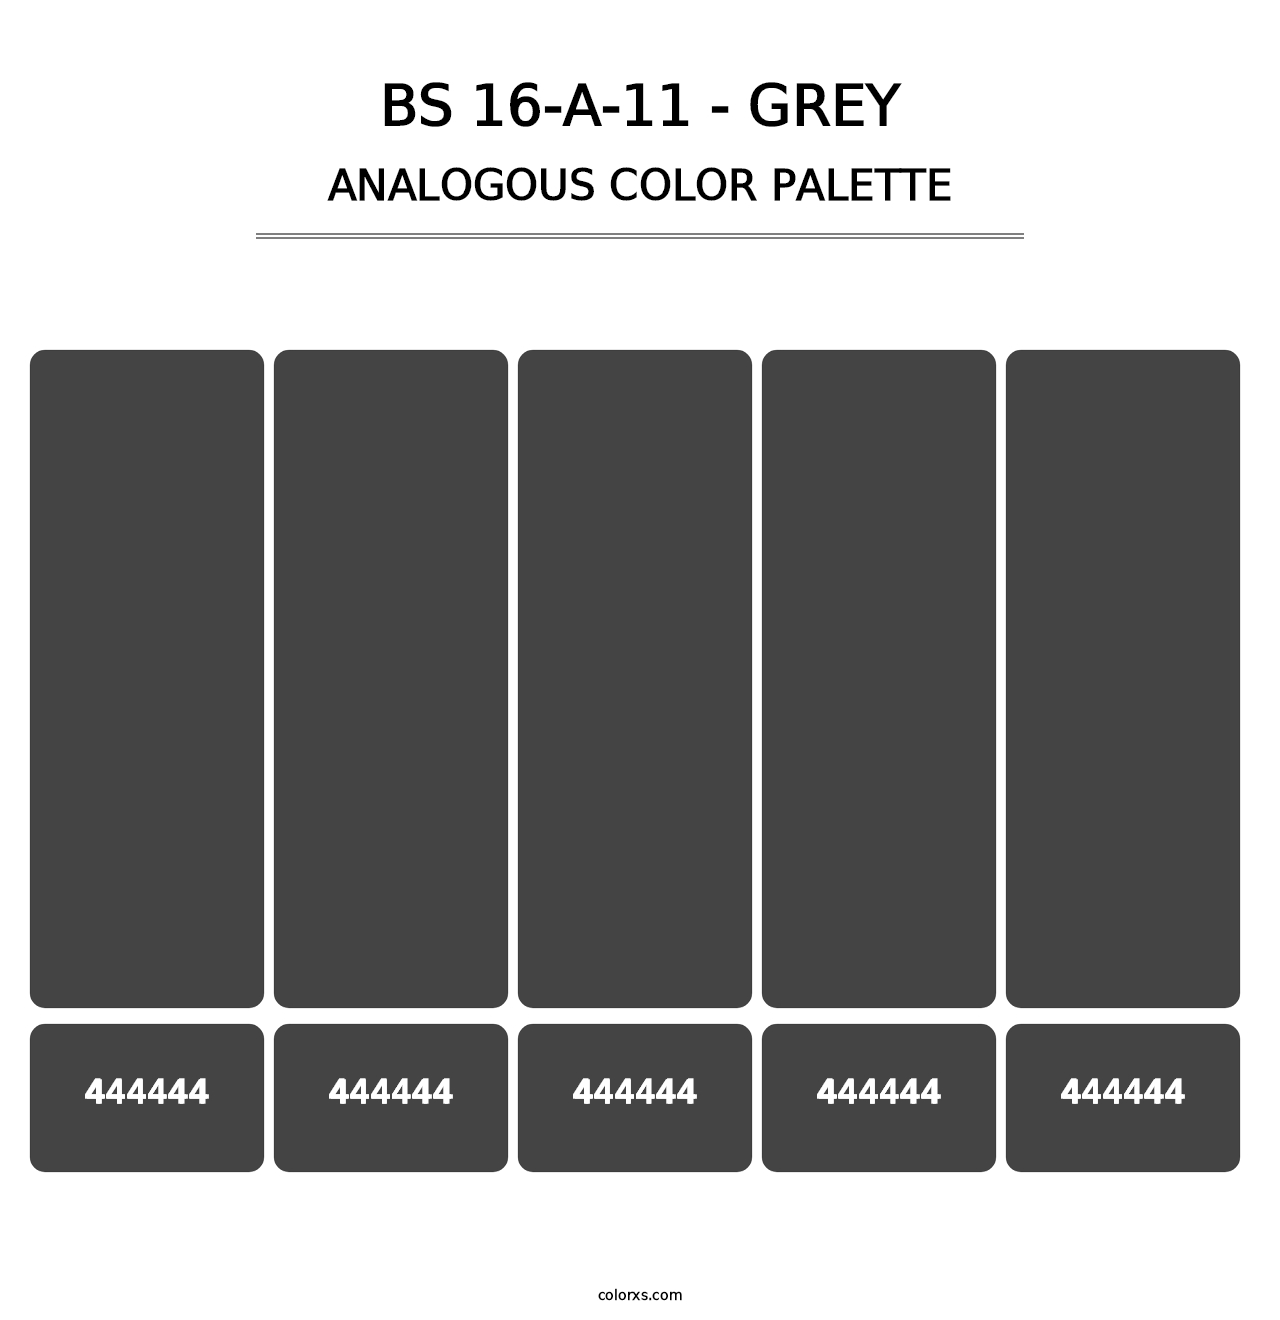 BS 16-A-11 - Grey - Analogous Color Palette